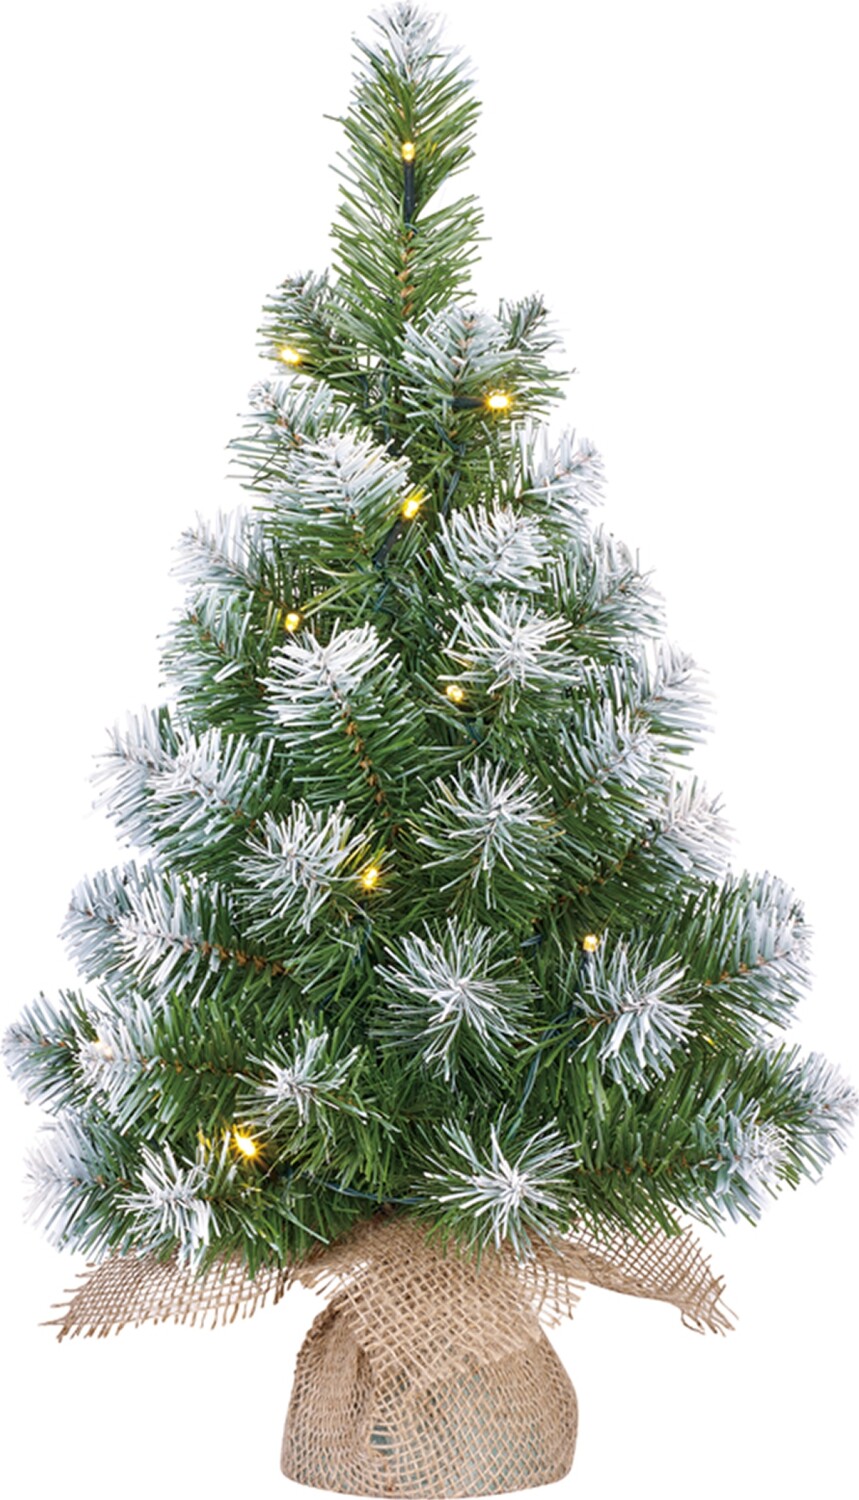 Afbeelding Kerstboom kunststof Norton frosted met verlichting 60 x 23 cm door Tuinadvies.be